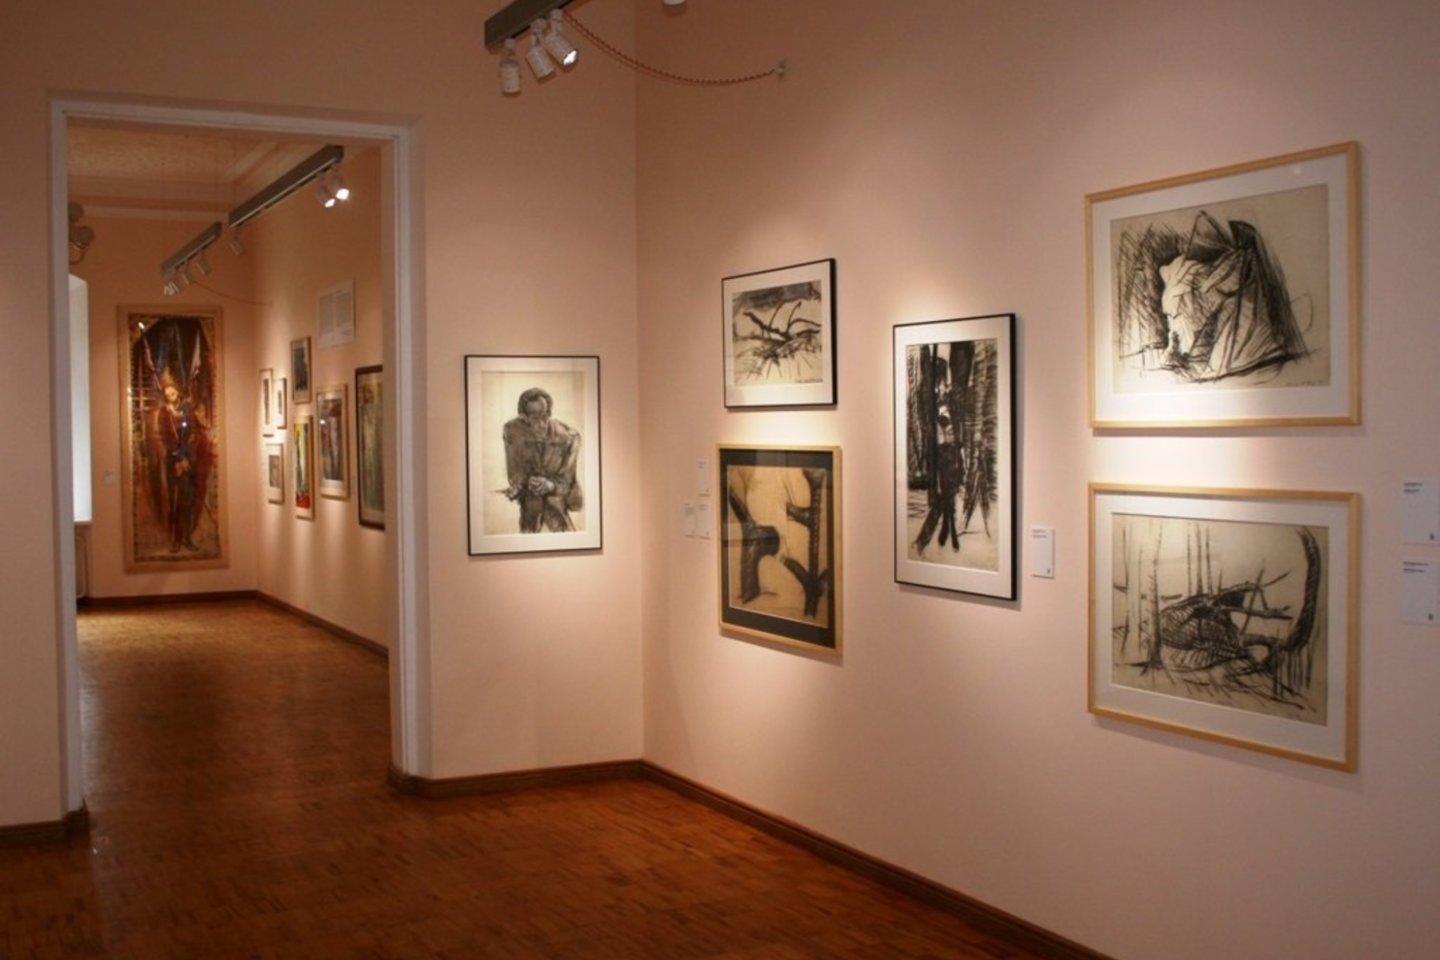 Dailininko, kolekcininko, meno kuratoriaus Vaidoto Žuko darbai eksponuojami Alantos dvaro muziejuje-galerijoje – septyniose dvaro salėse.